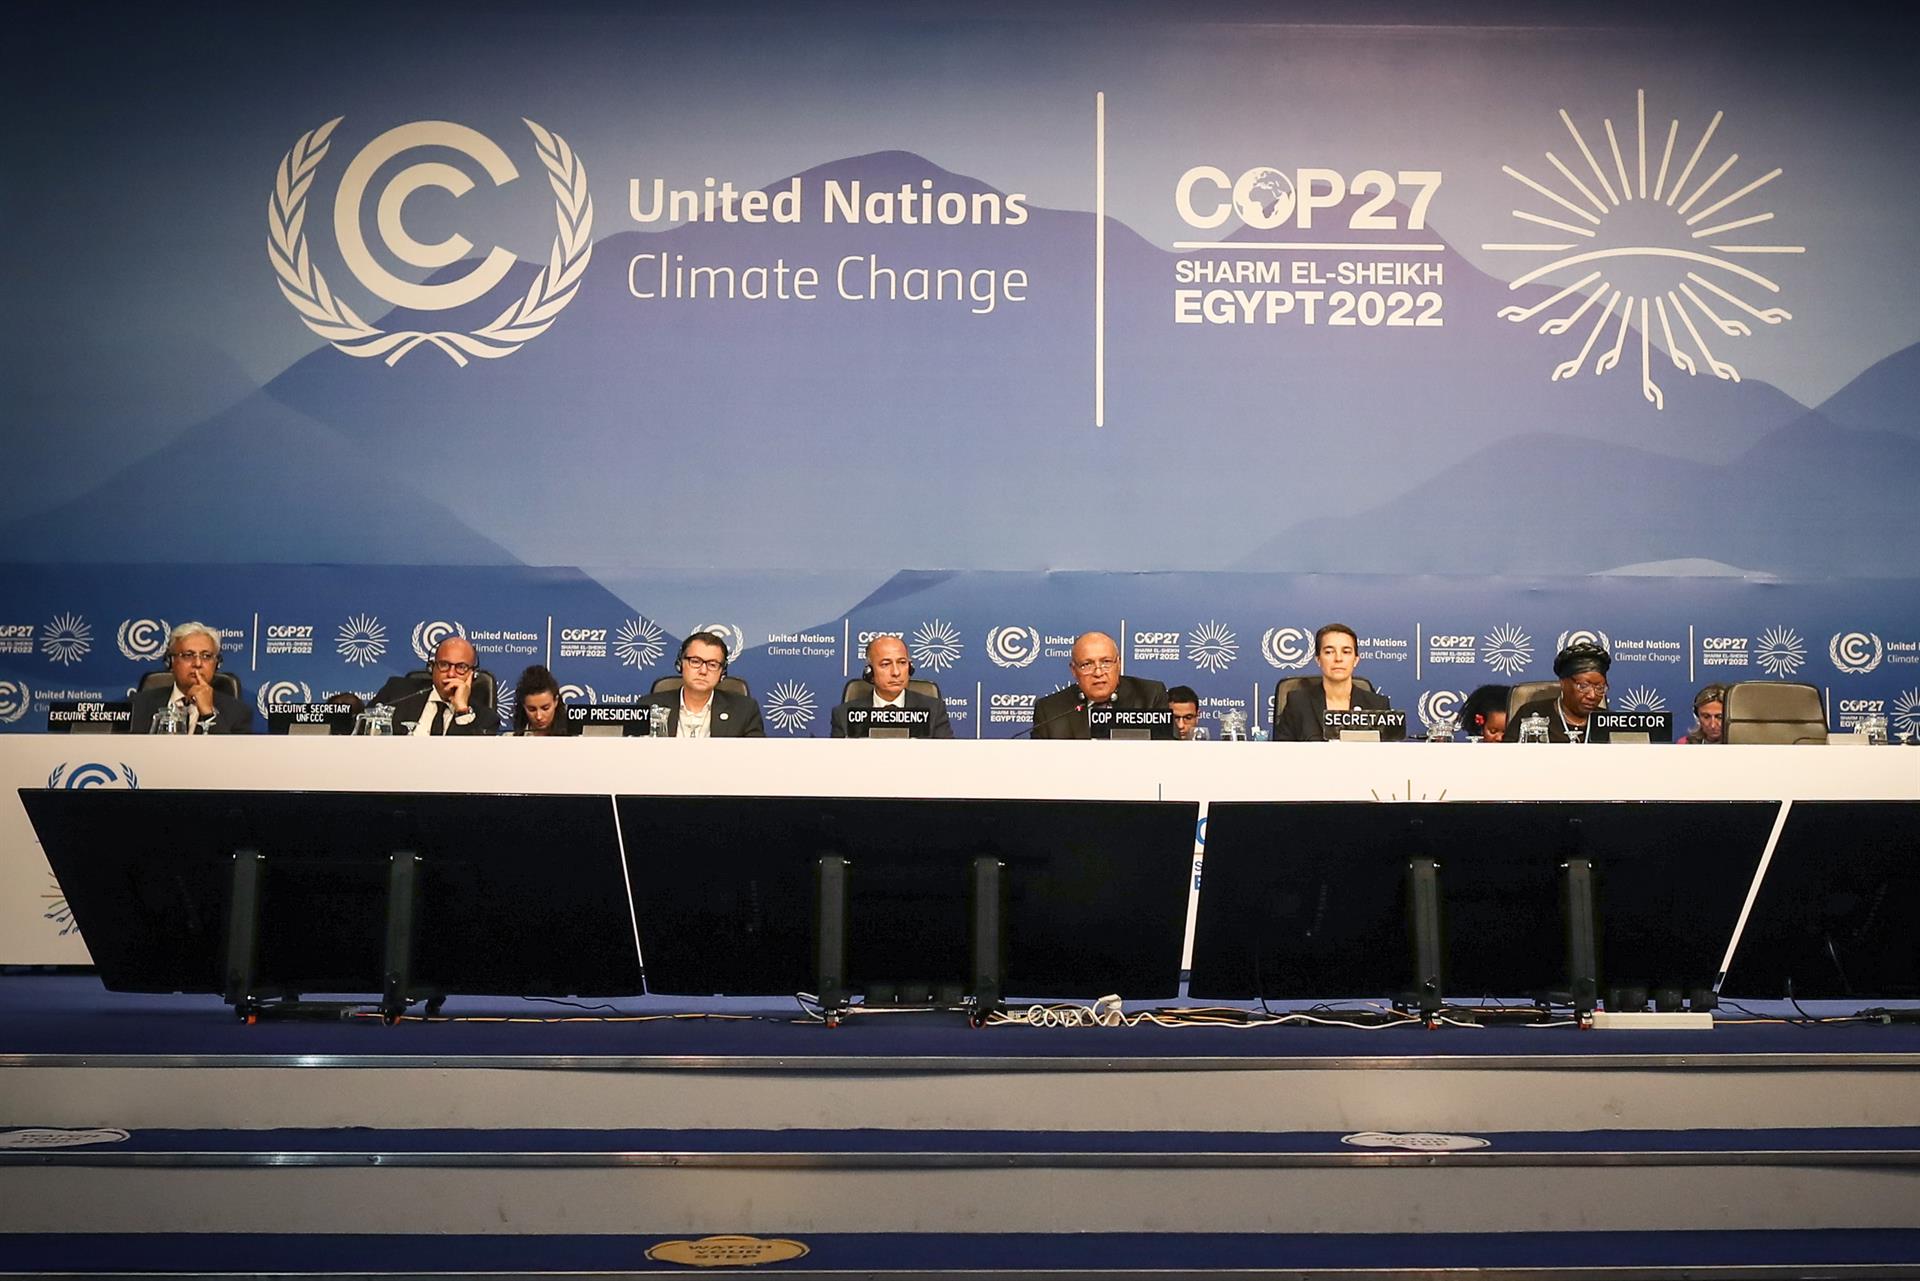 ¿Crees que la COP27 tomará medidas eficientes contra el cambio climático?